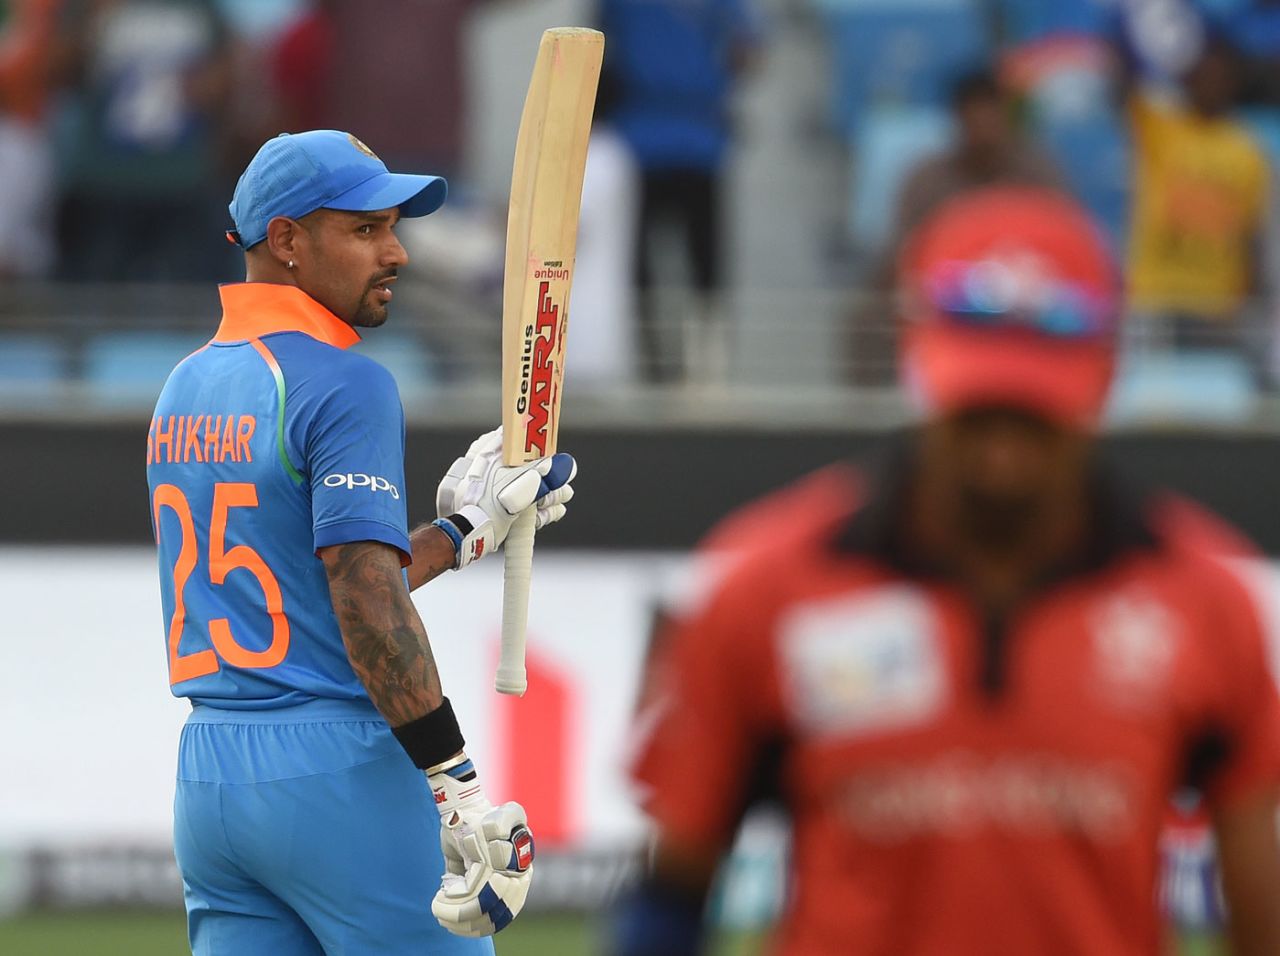 Shikhar Dhawan raises his bat to acknowledge a half-century, India v Hong Kong, Asia Cup 2018, Dubai, September 18, 2018